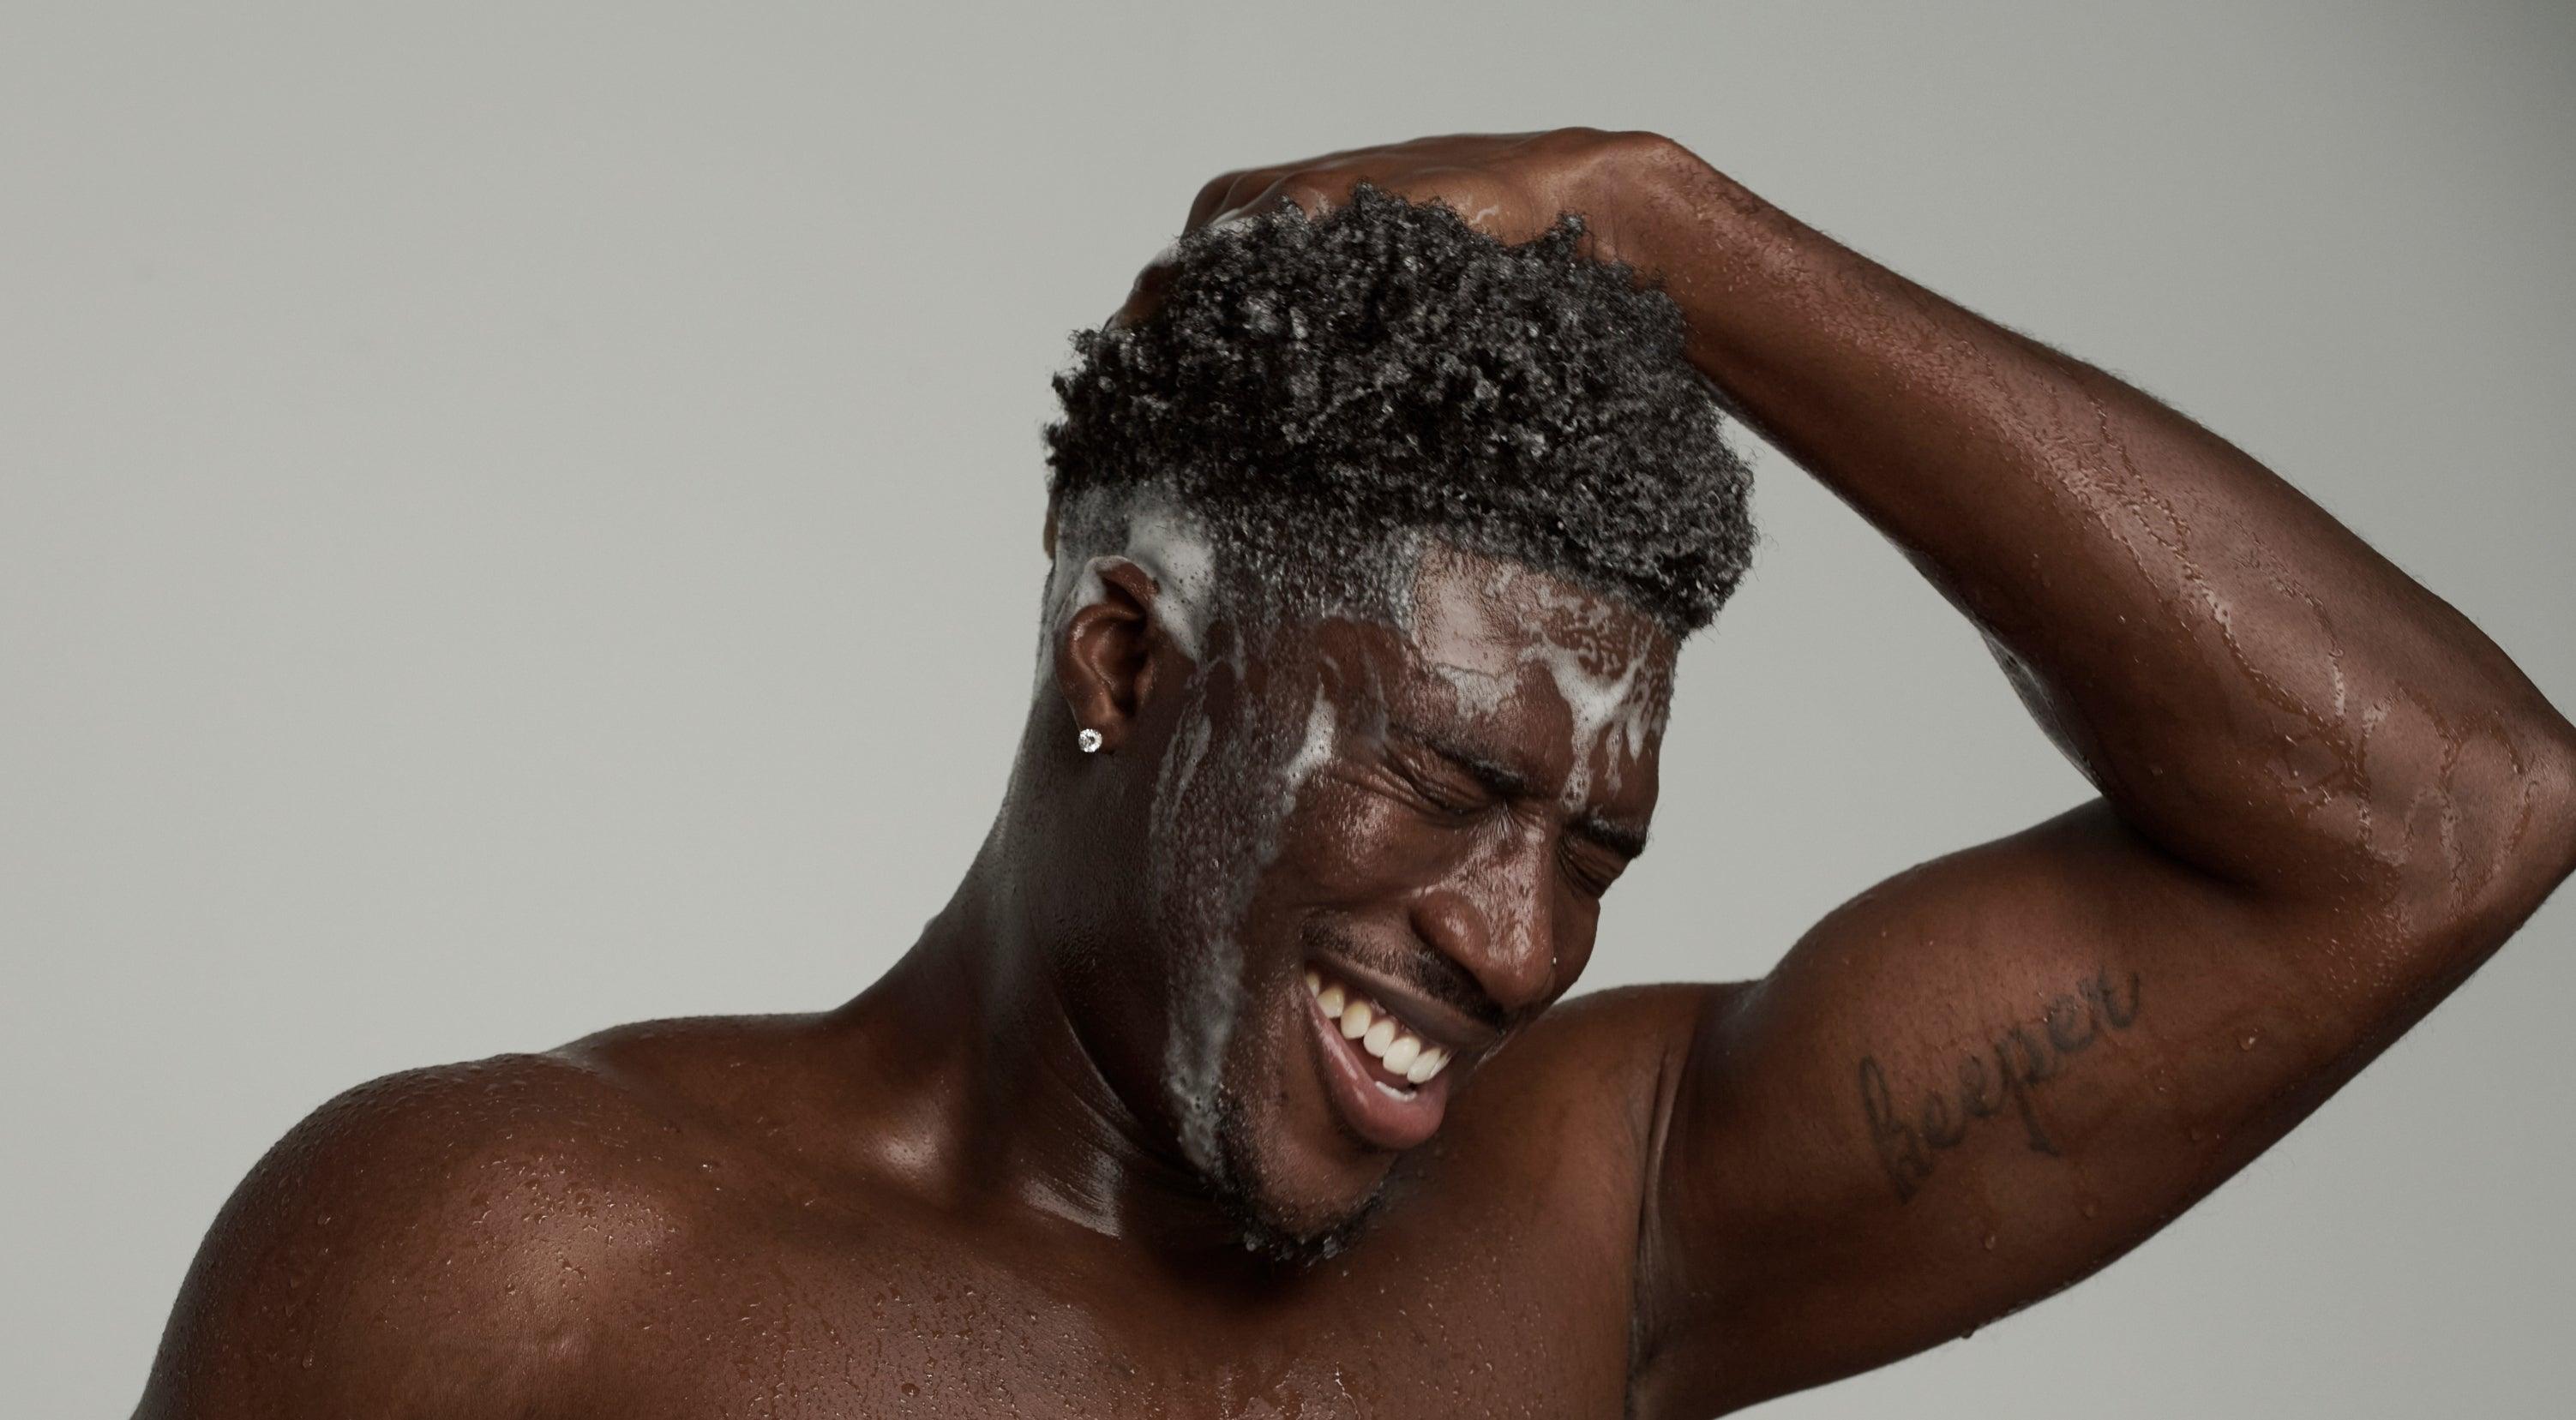 Hair care tips for black men